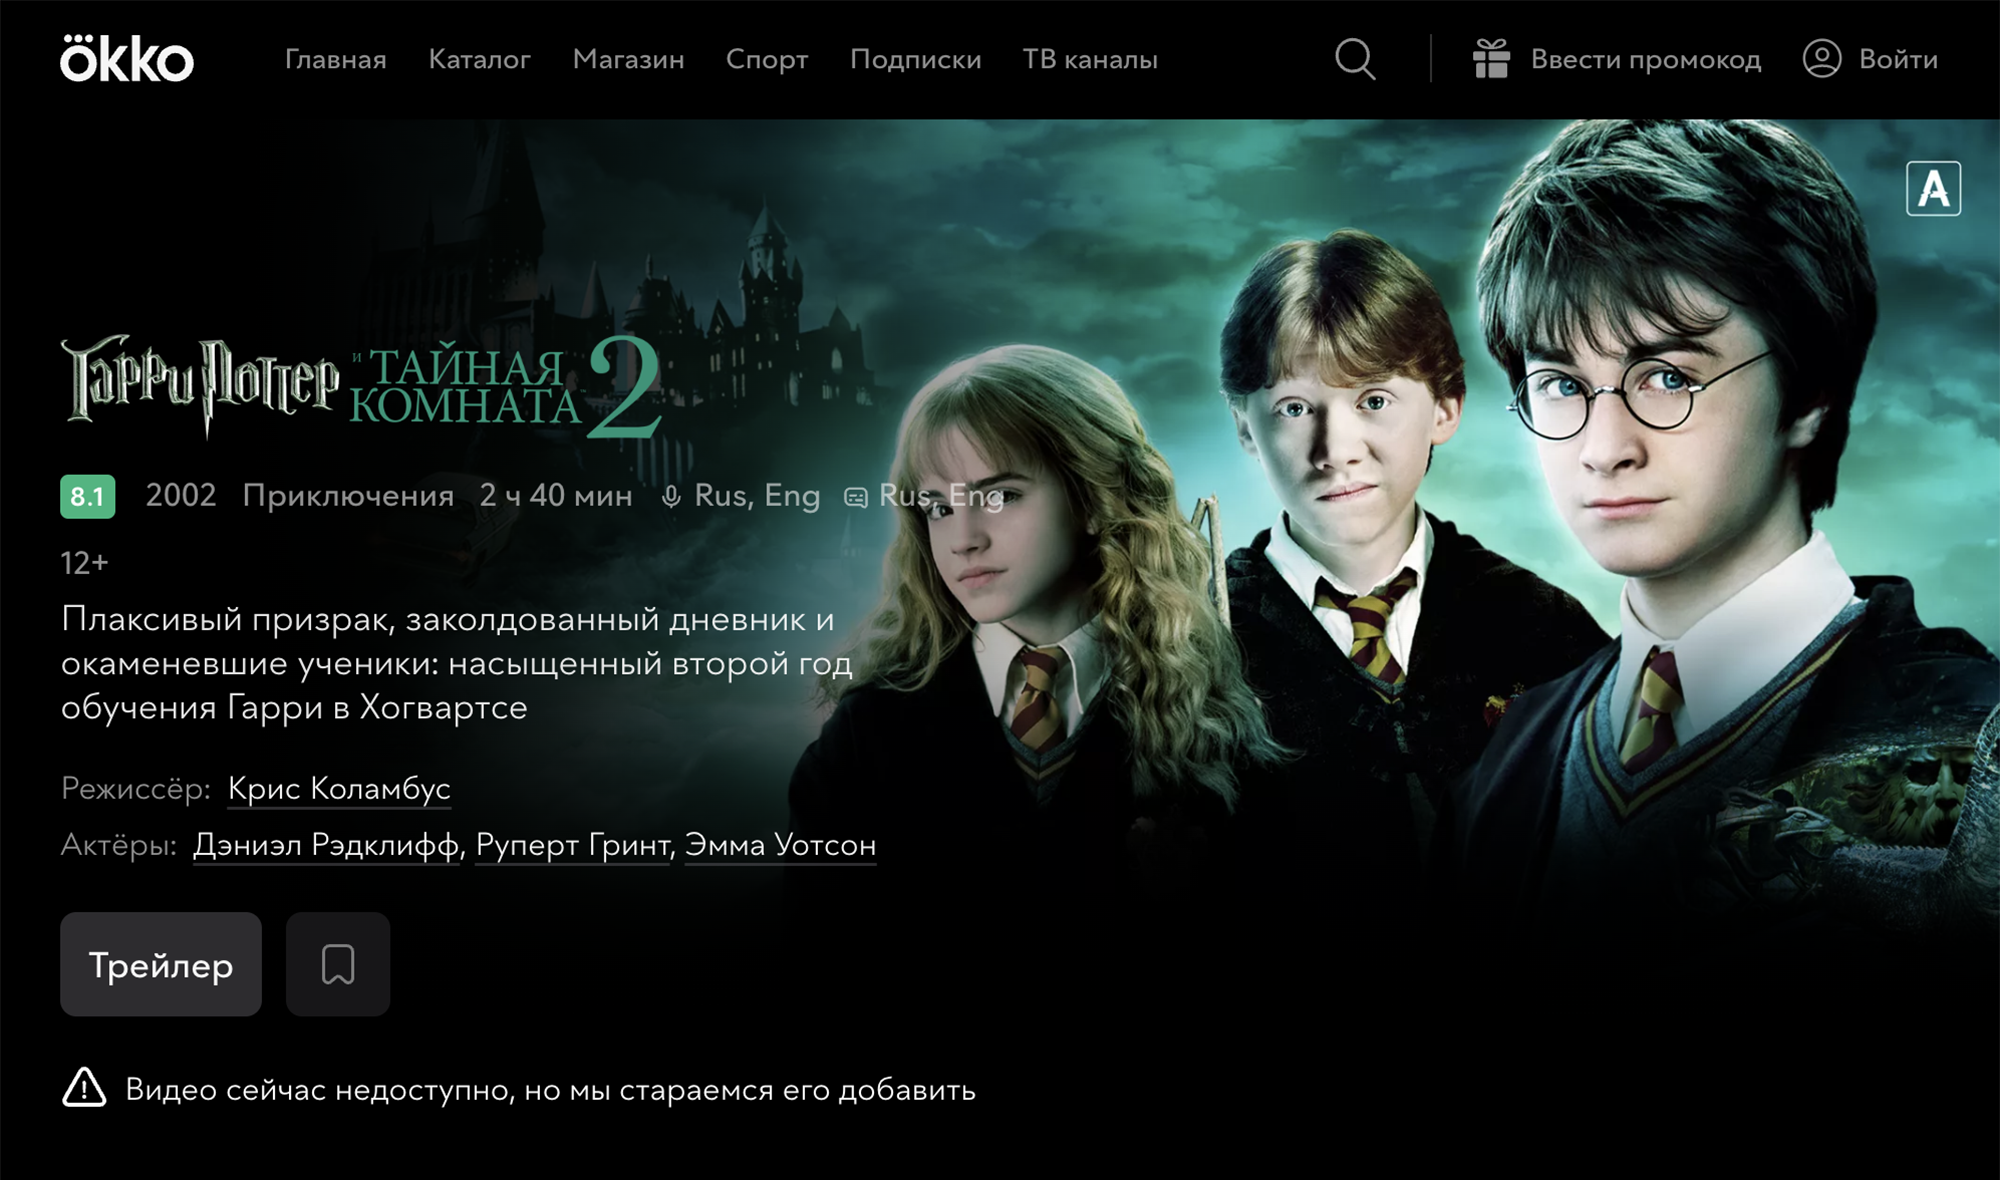 Так выглядит страница одного из фильмов про Гарри Поттера в Okko 1 февраля. Источник: okko.tv